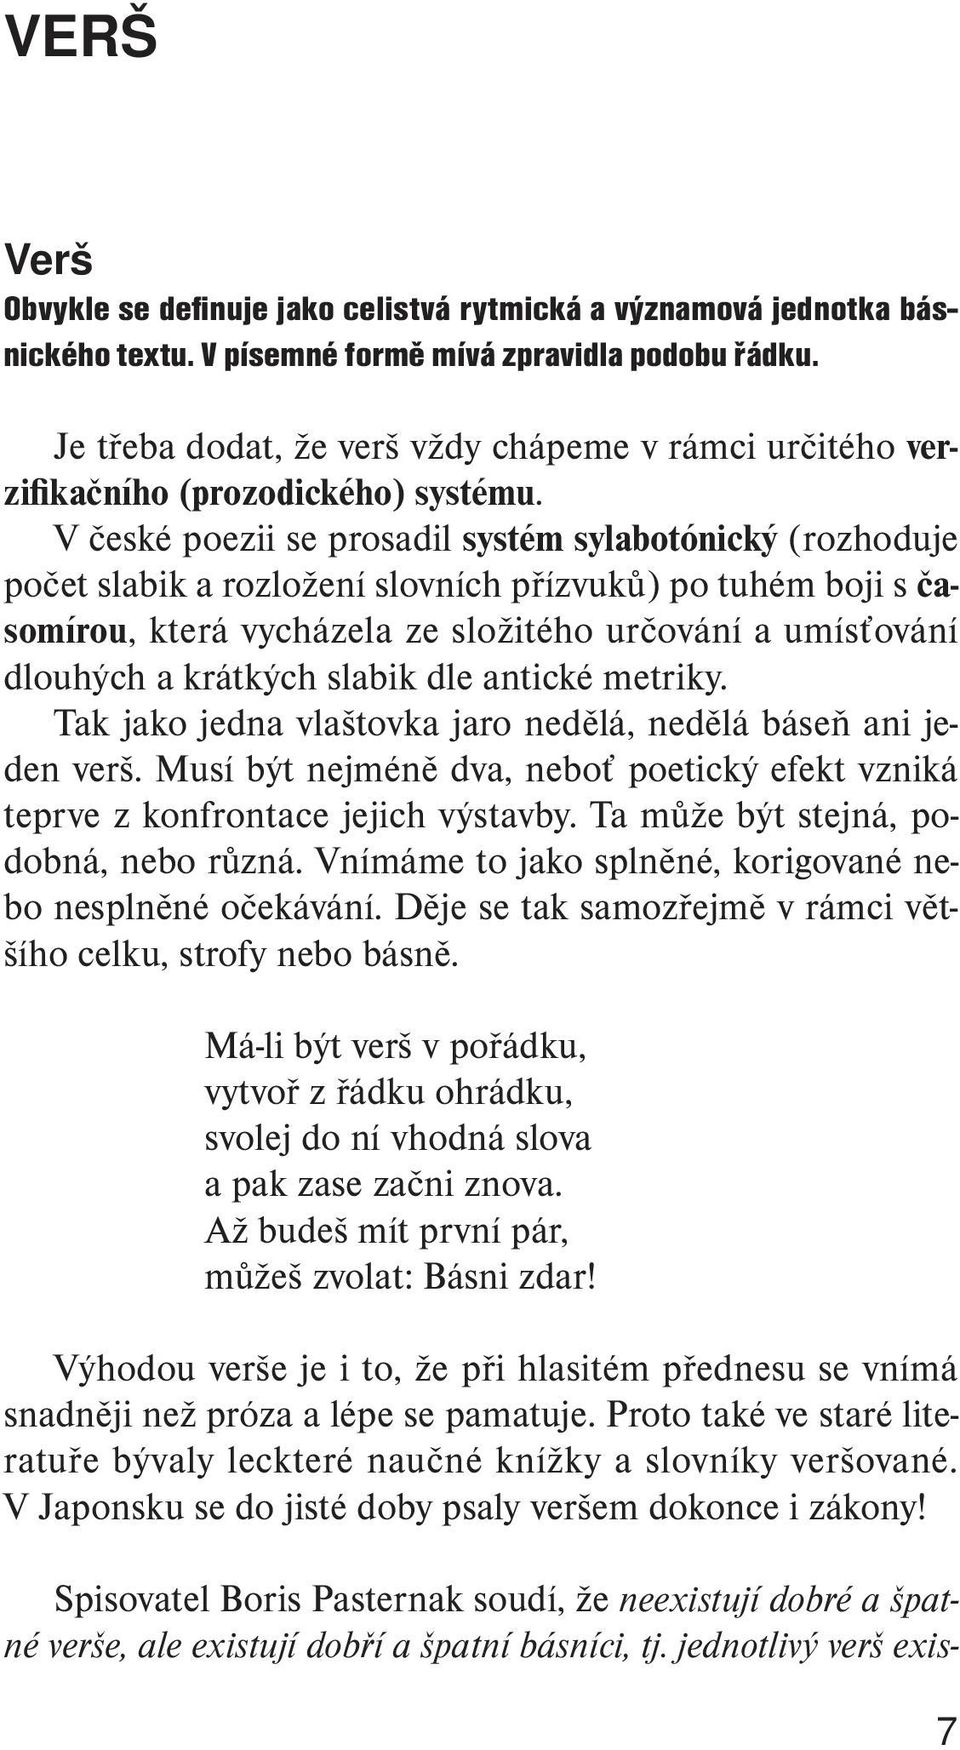 V české poezii se prosadil systém sylabotónický (rozhoduje počet slabik a rozložení slovních přízvuků) po tuhém boji s časomírou, která vycházela ze složitého určování a umísťování dlouhých a